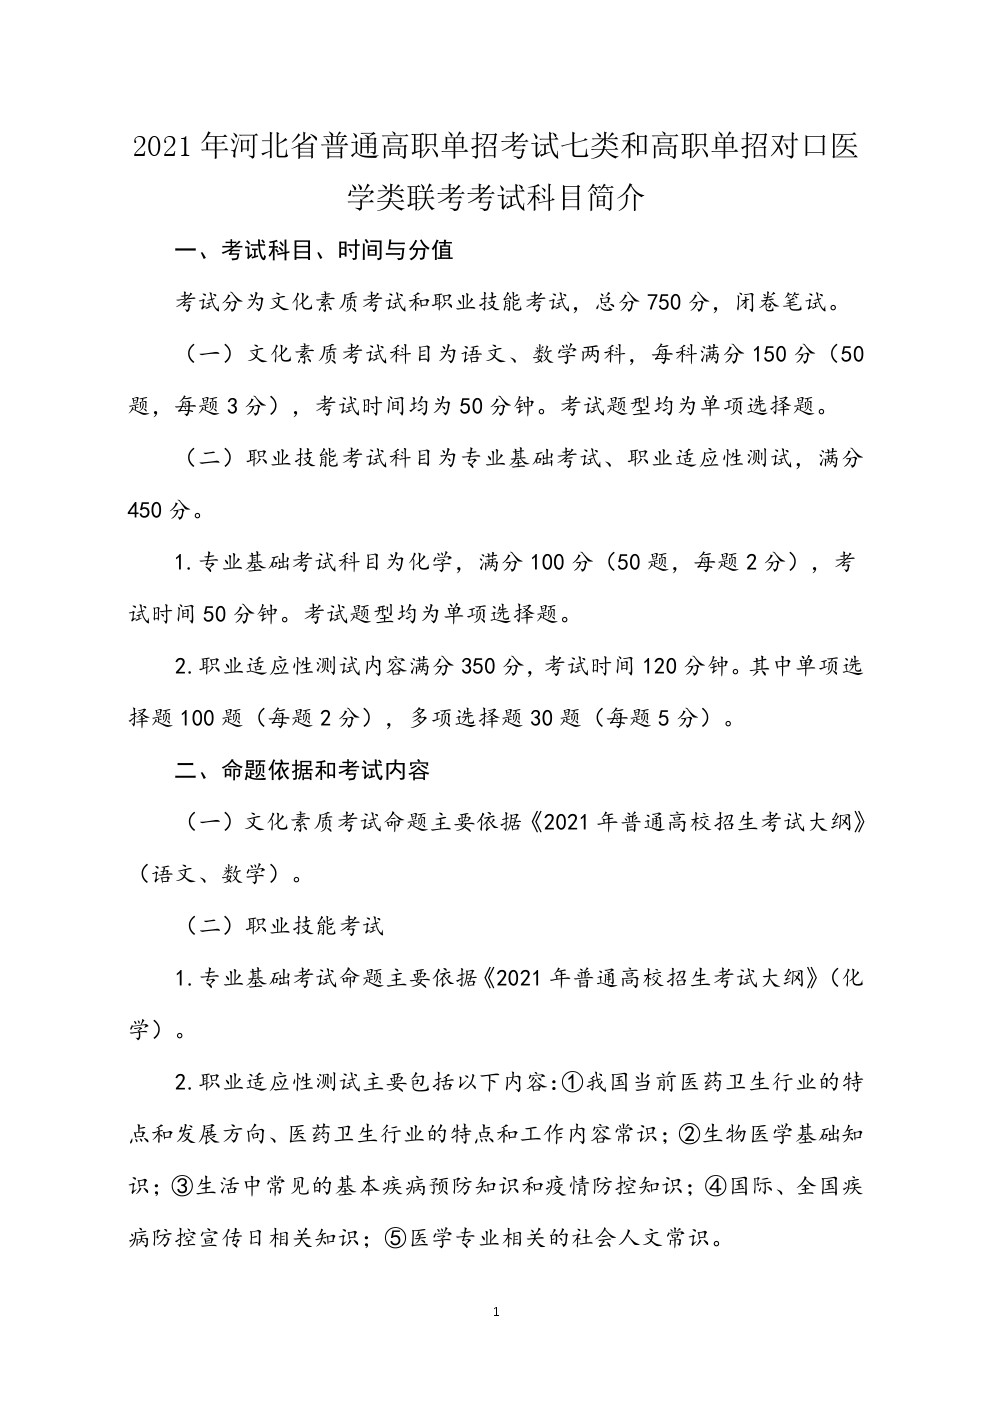 2021年河北省普通高职单招考试七类和对口医学类联考大纲 图1